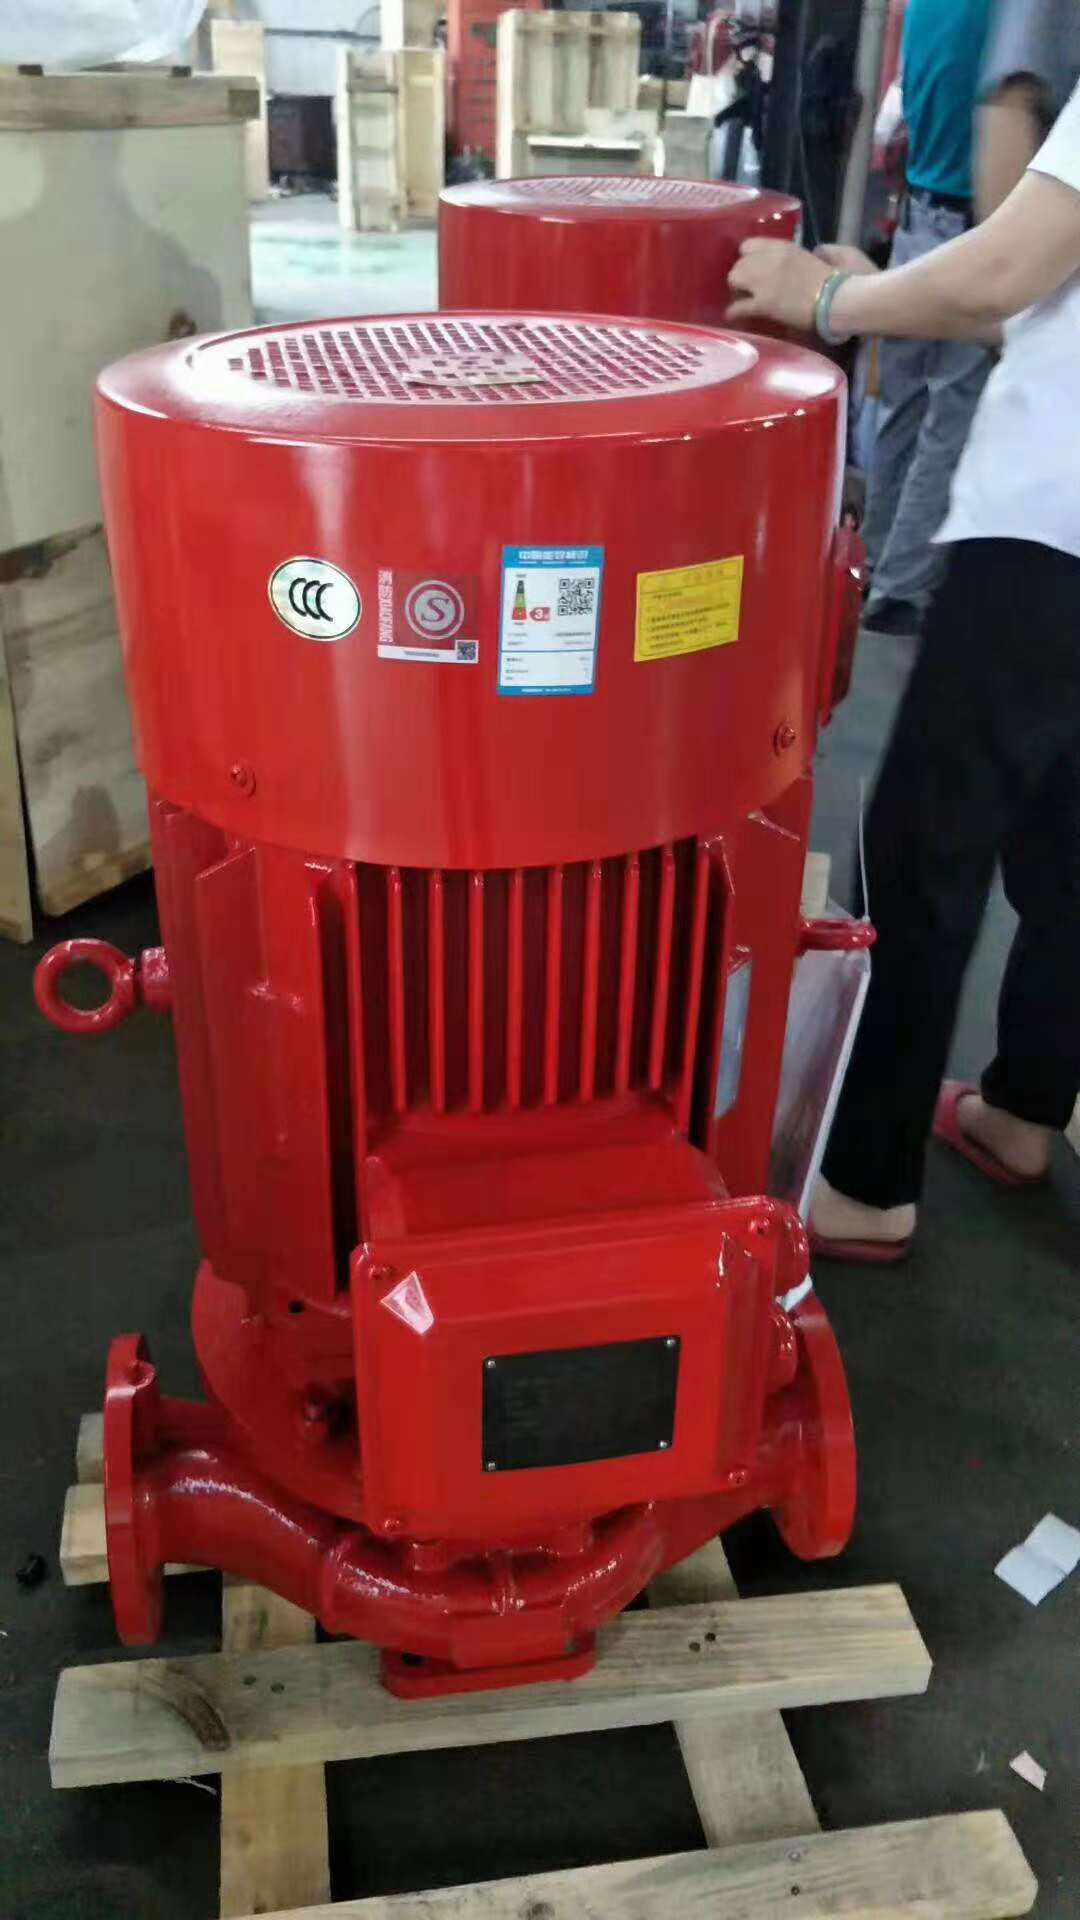 22KW泵房安装消防泵/稳压设备XBD4.4/25-80DL*2十年品牌厂家消防泵调试/控制柜安装